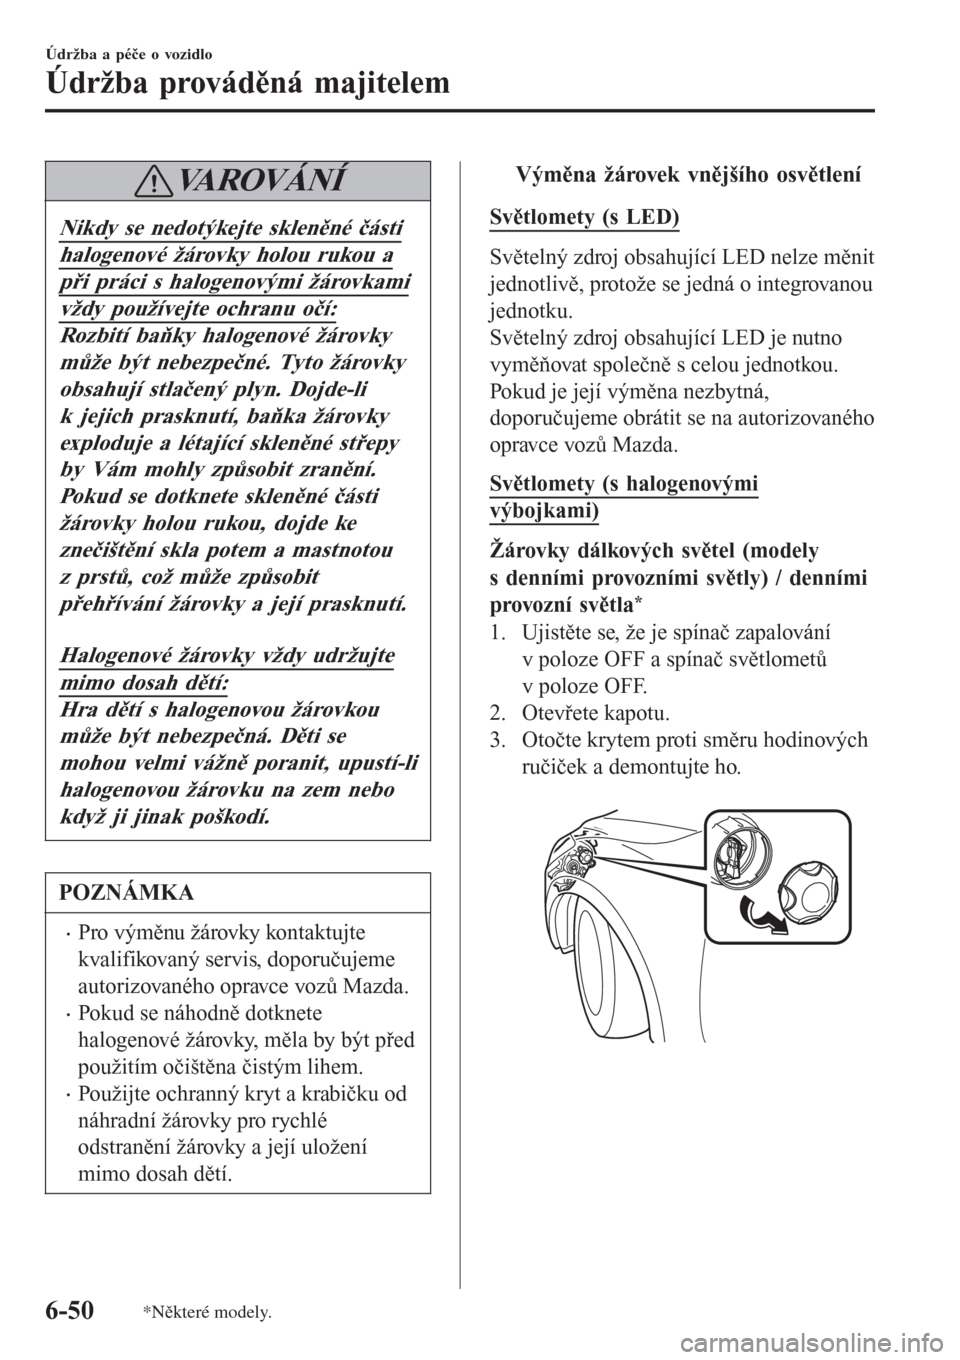 MAZDA MODEL CX-3 2015  Návod k obsluze (in Czech) VAROVÁNÍ
Nikdy se nedotýkejte skleněné části
halogenové žárovky holou rukou a
při práci s halogenovými žárovkami
vždy používejte ochranu očí:
Rozbití baňky halogenové žárovky
